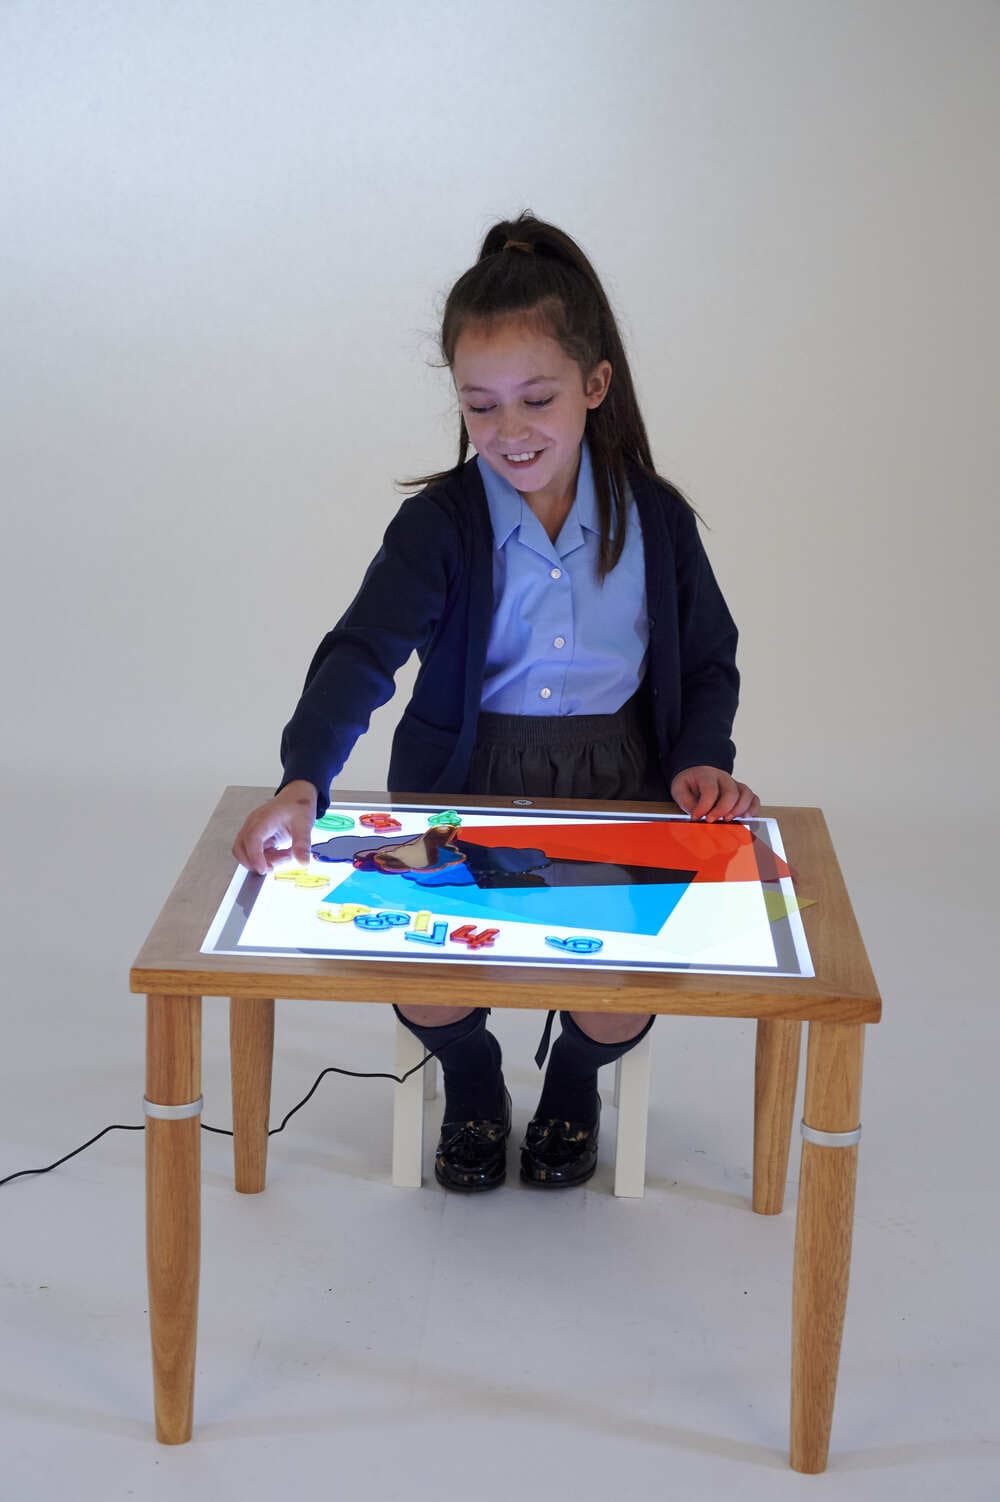 Stolik z panelem świetlnym to znakomite wyposażenie żłobka i przedszkola. Przeprowadź zajęcia sensoryczne, która uruchomią kreatywność dzieci i zachęcą do poznawania świata.